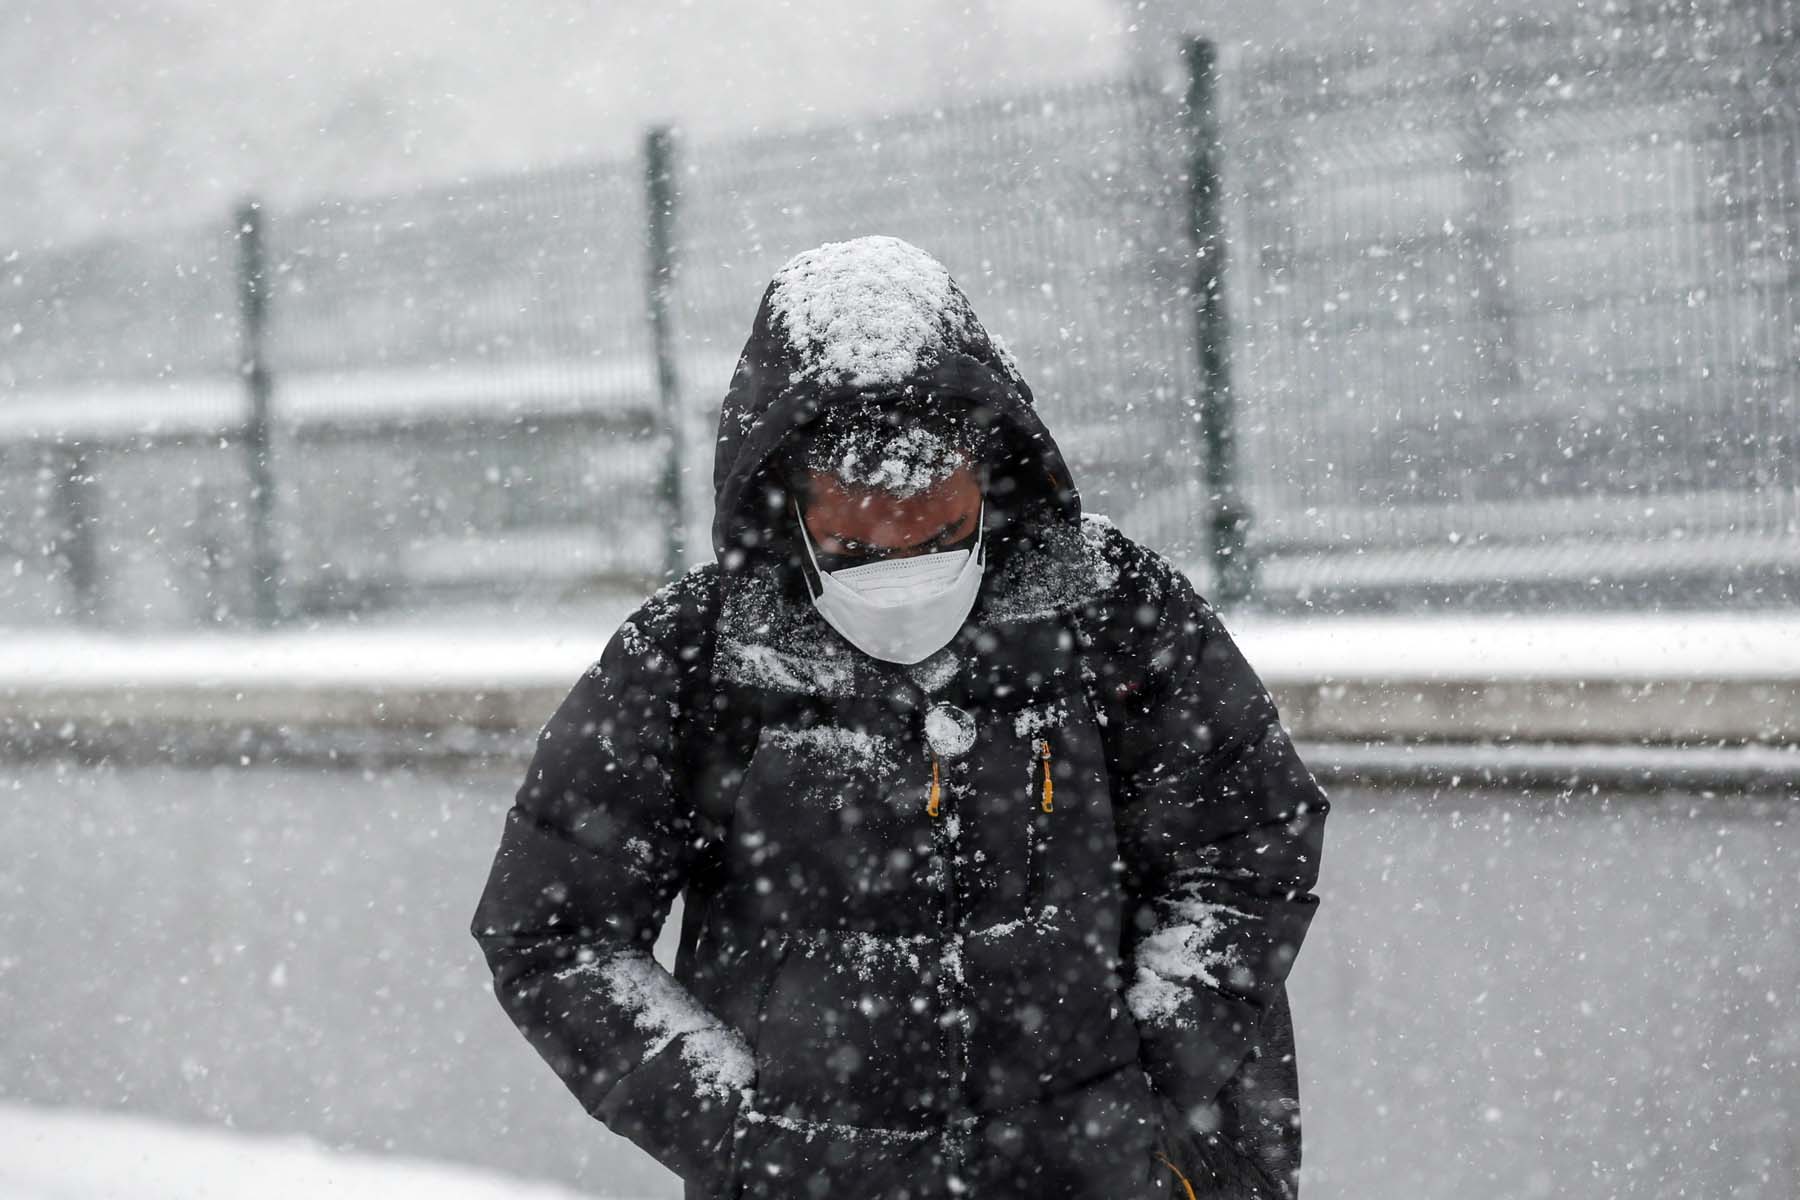 İstanbul'da metro ve tramvay seferlerine kar yağışı ayarı! Metro İstanbul duyurdu: Sefer saatleri uzatıldı 